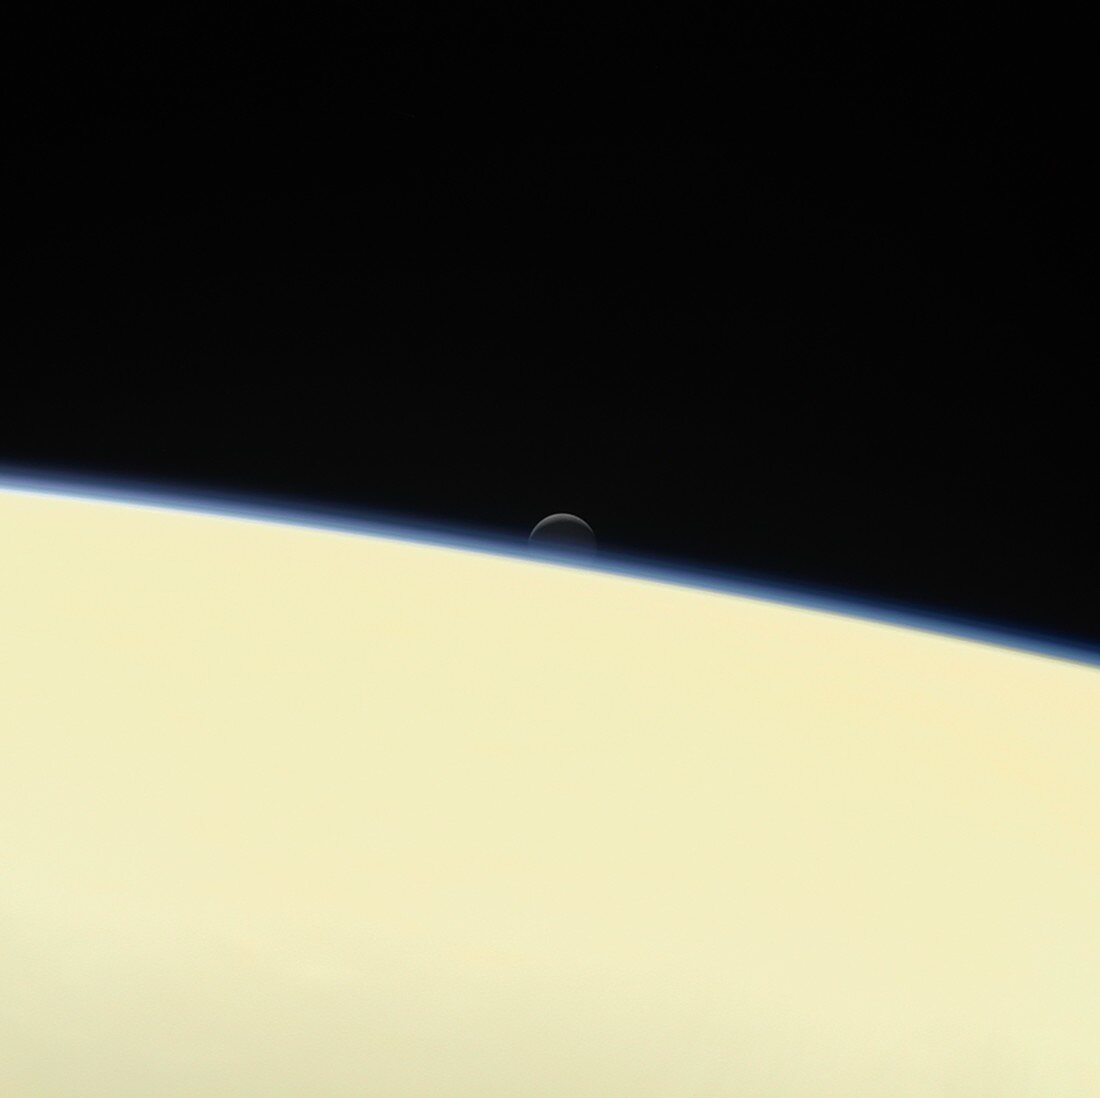 Enceladus setting behind Saturn, Cassini image